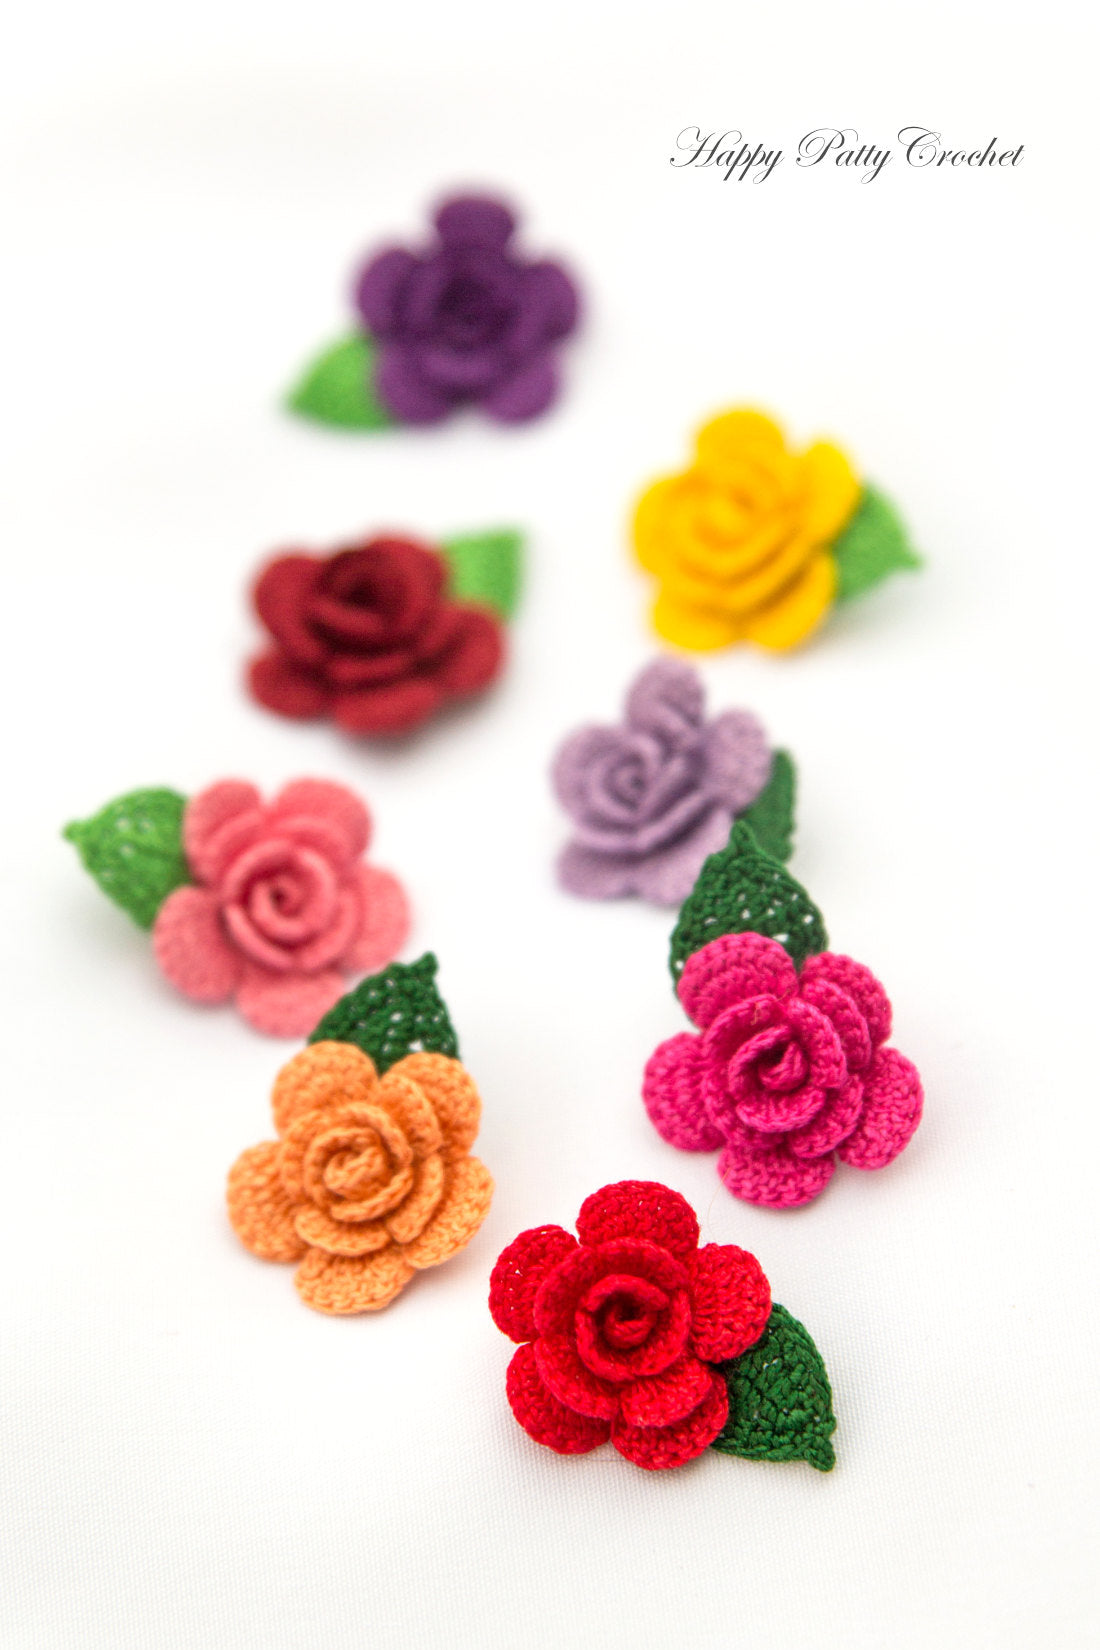 Crochet Rose Applique Pattern by Happy Patty Crochet